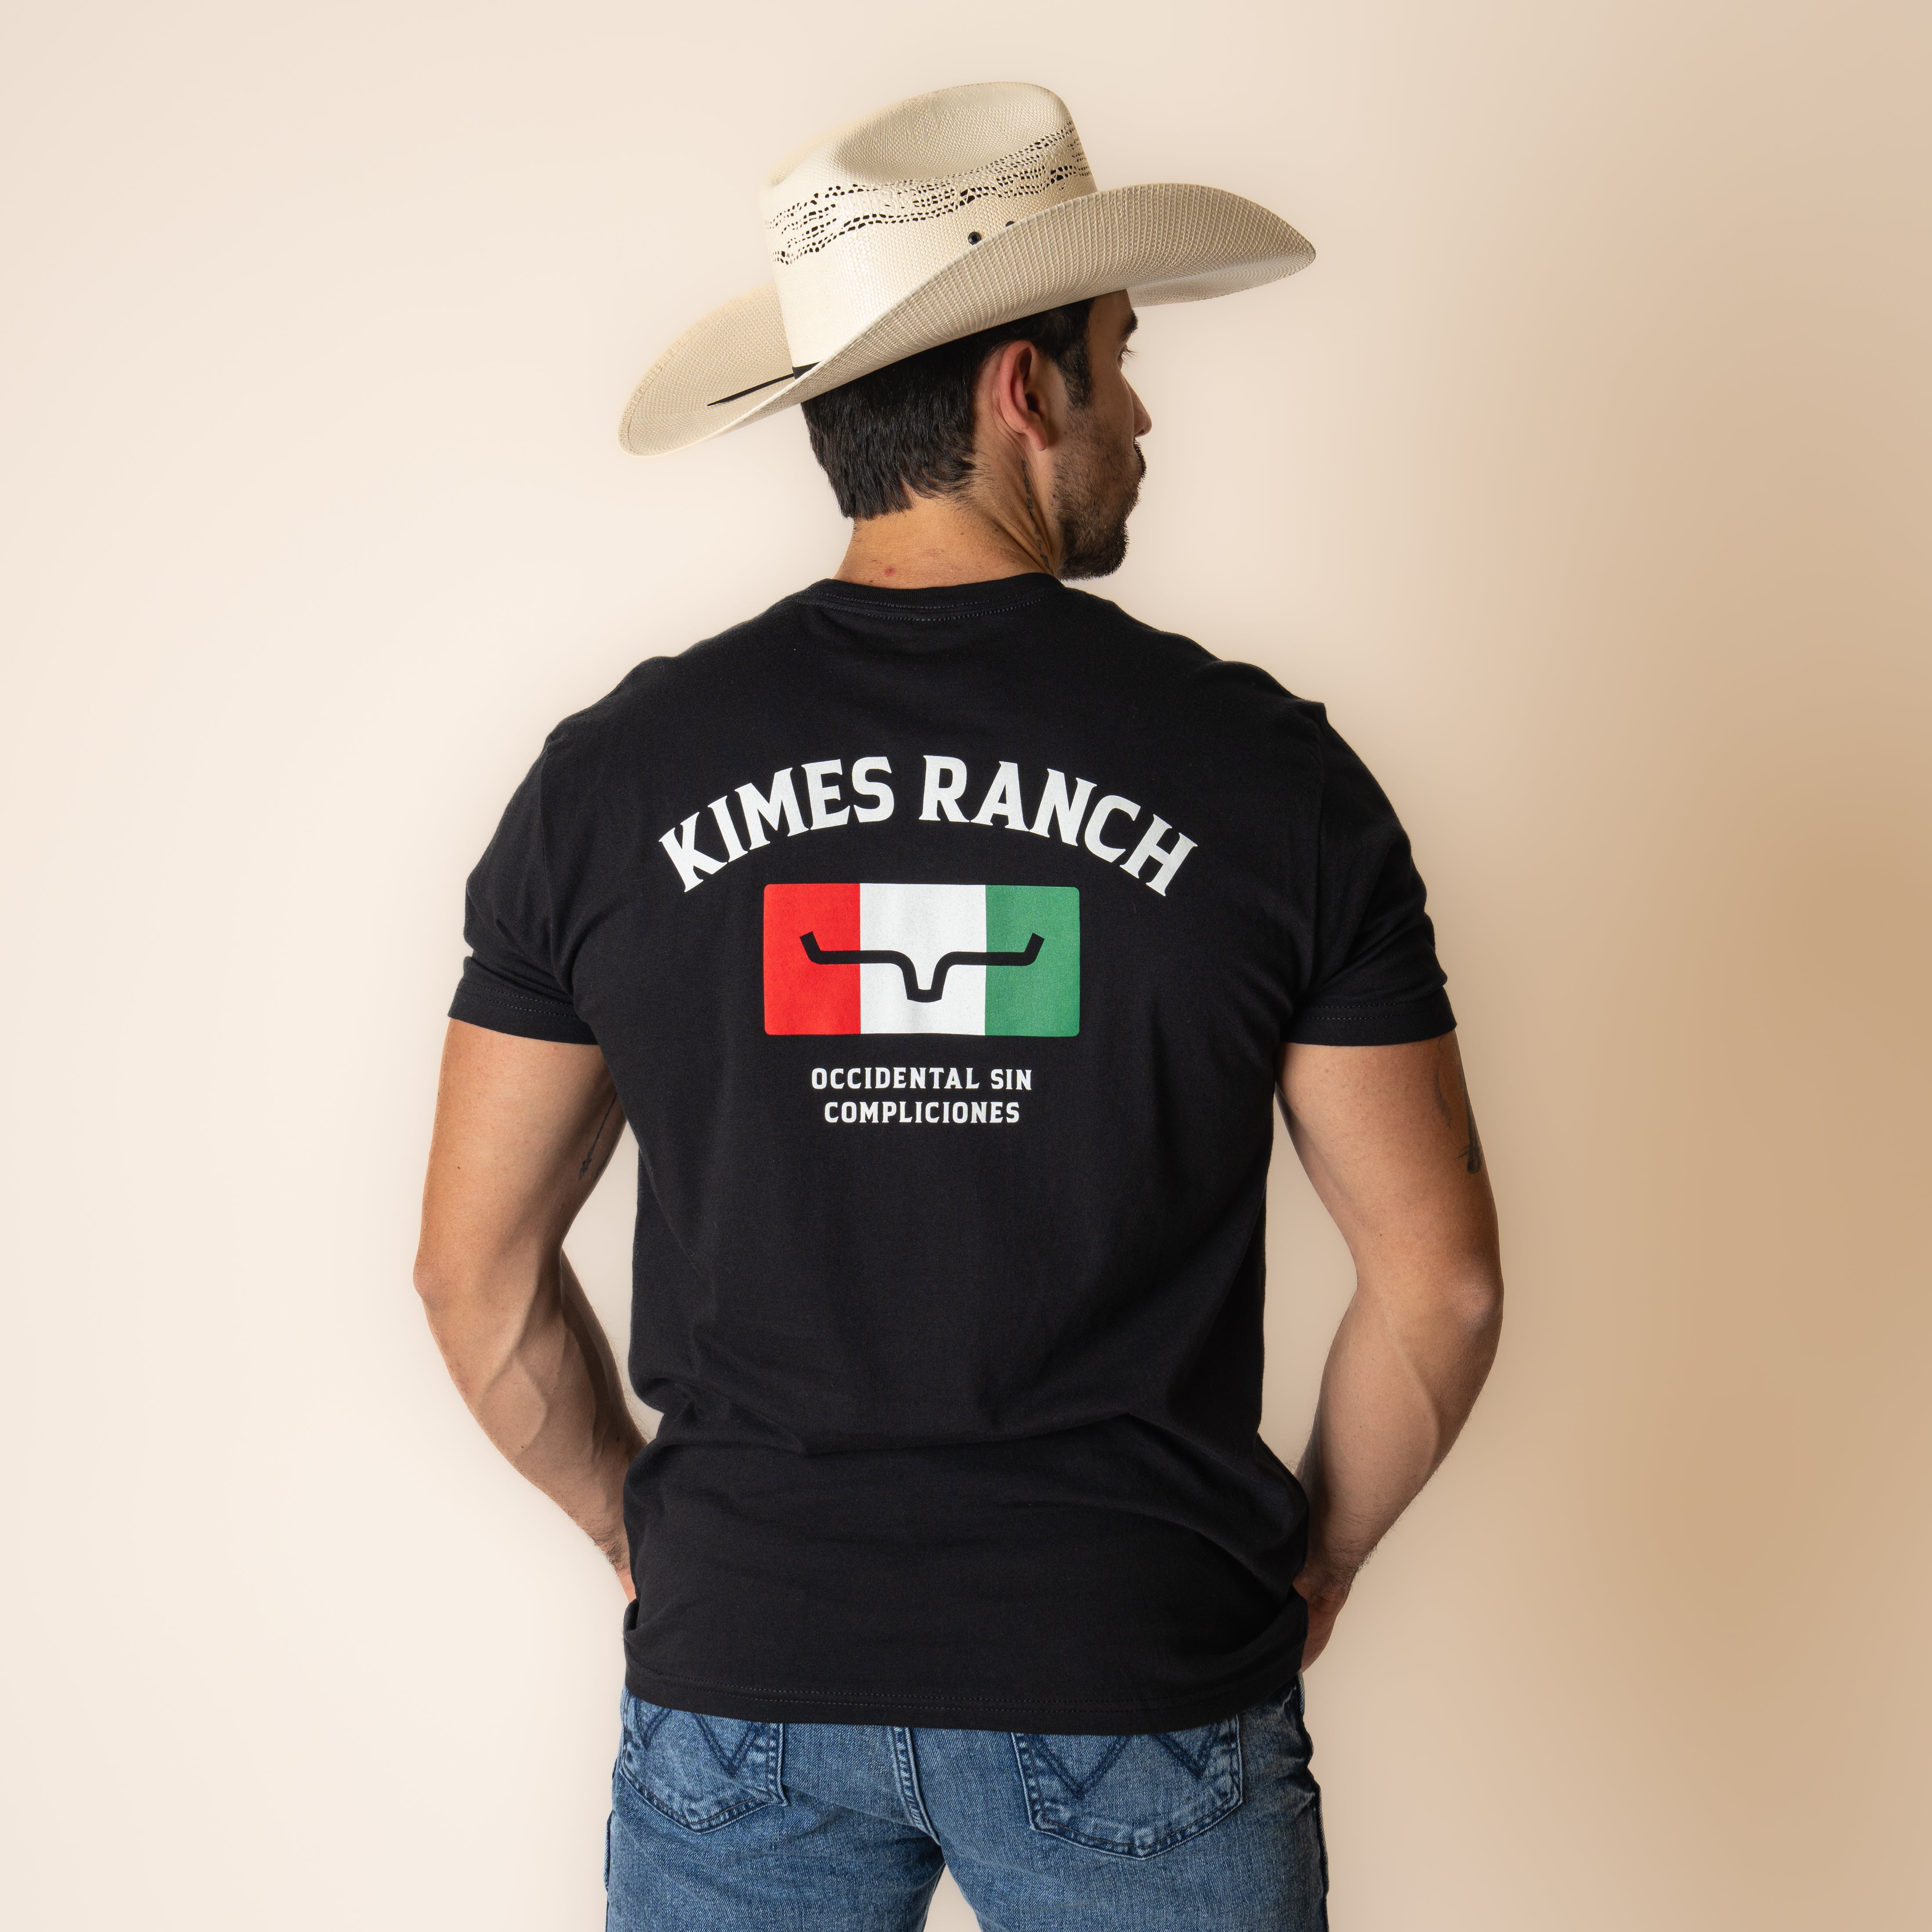 Playera Kimes Ranch Bandera Black Caballero